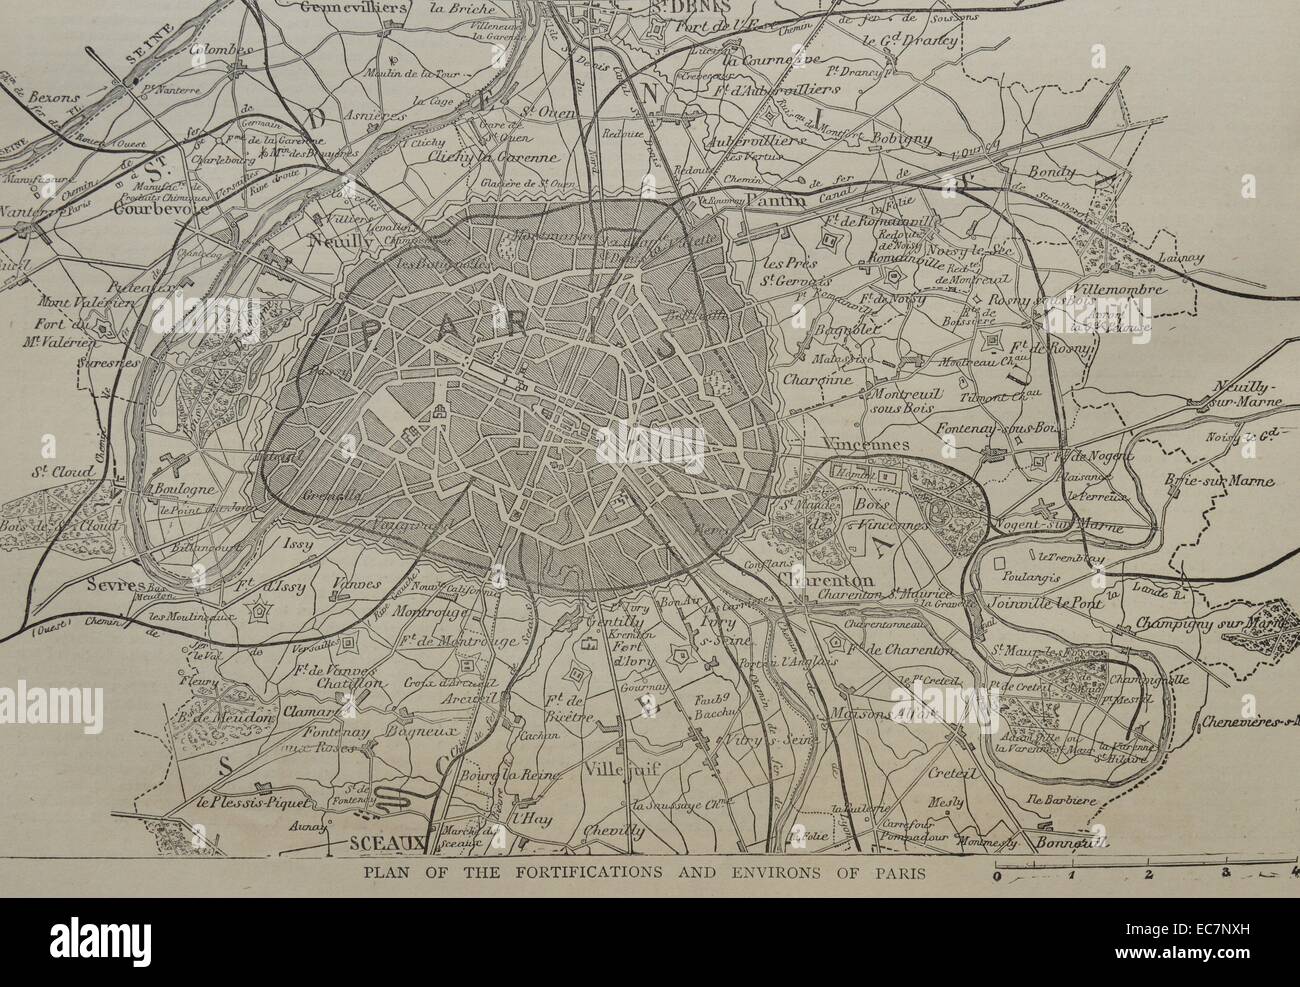 Mappa raffigurante il piano delle fortificazioni e dintorni di Parigi. Datata 1870 Foto Stock